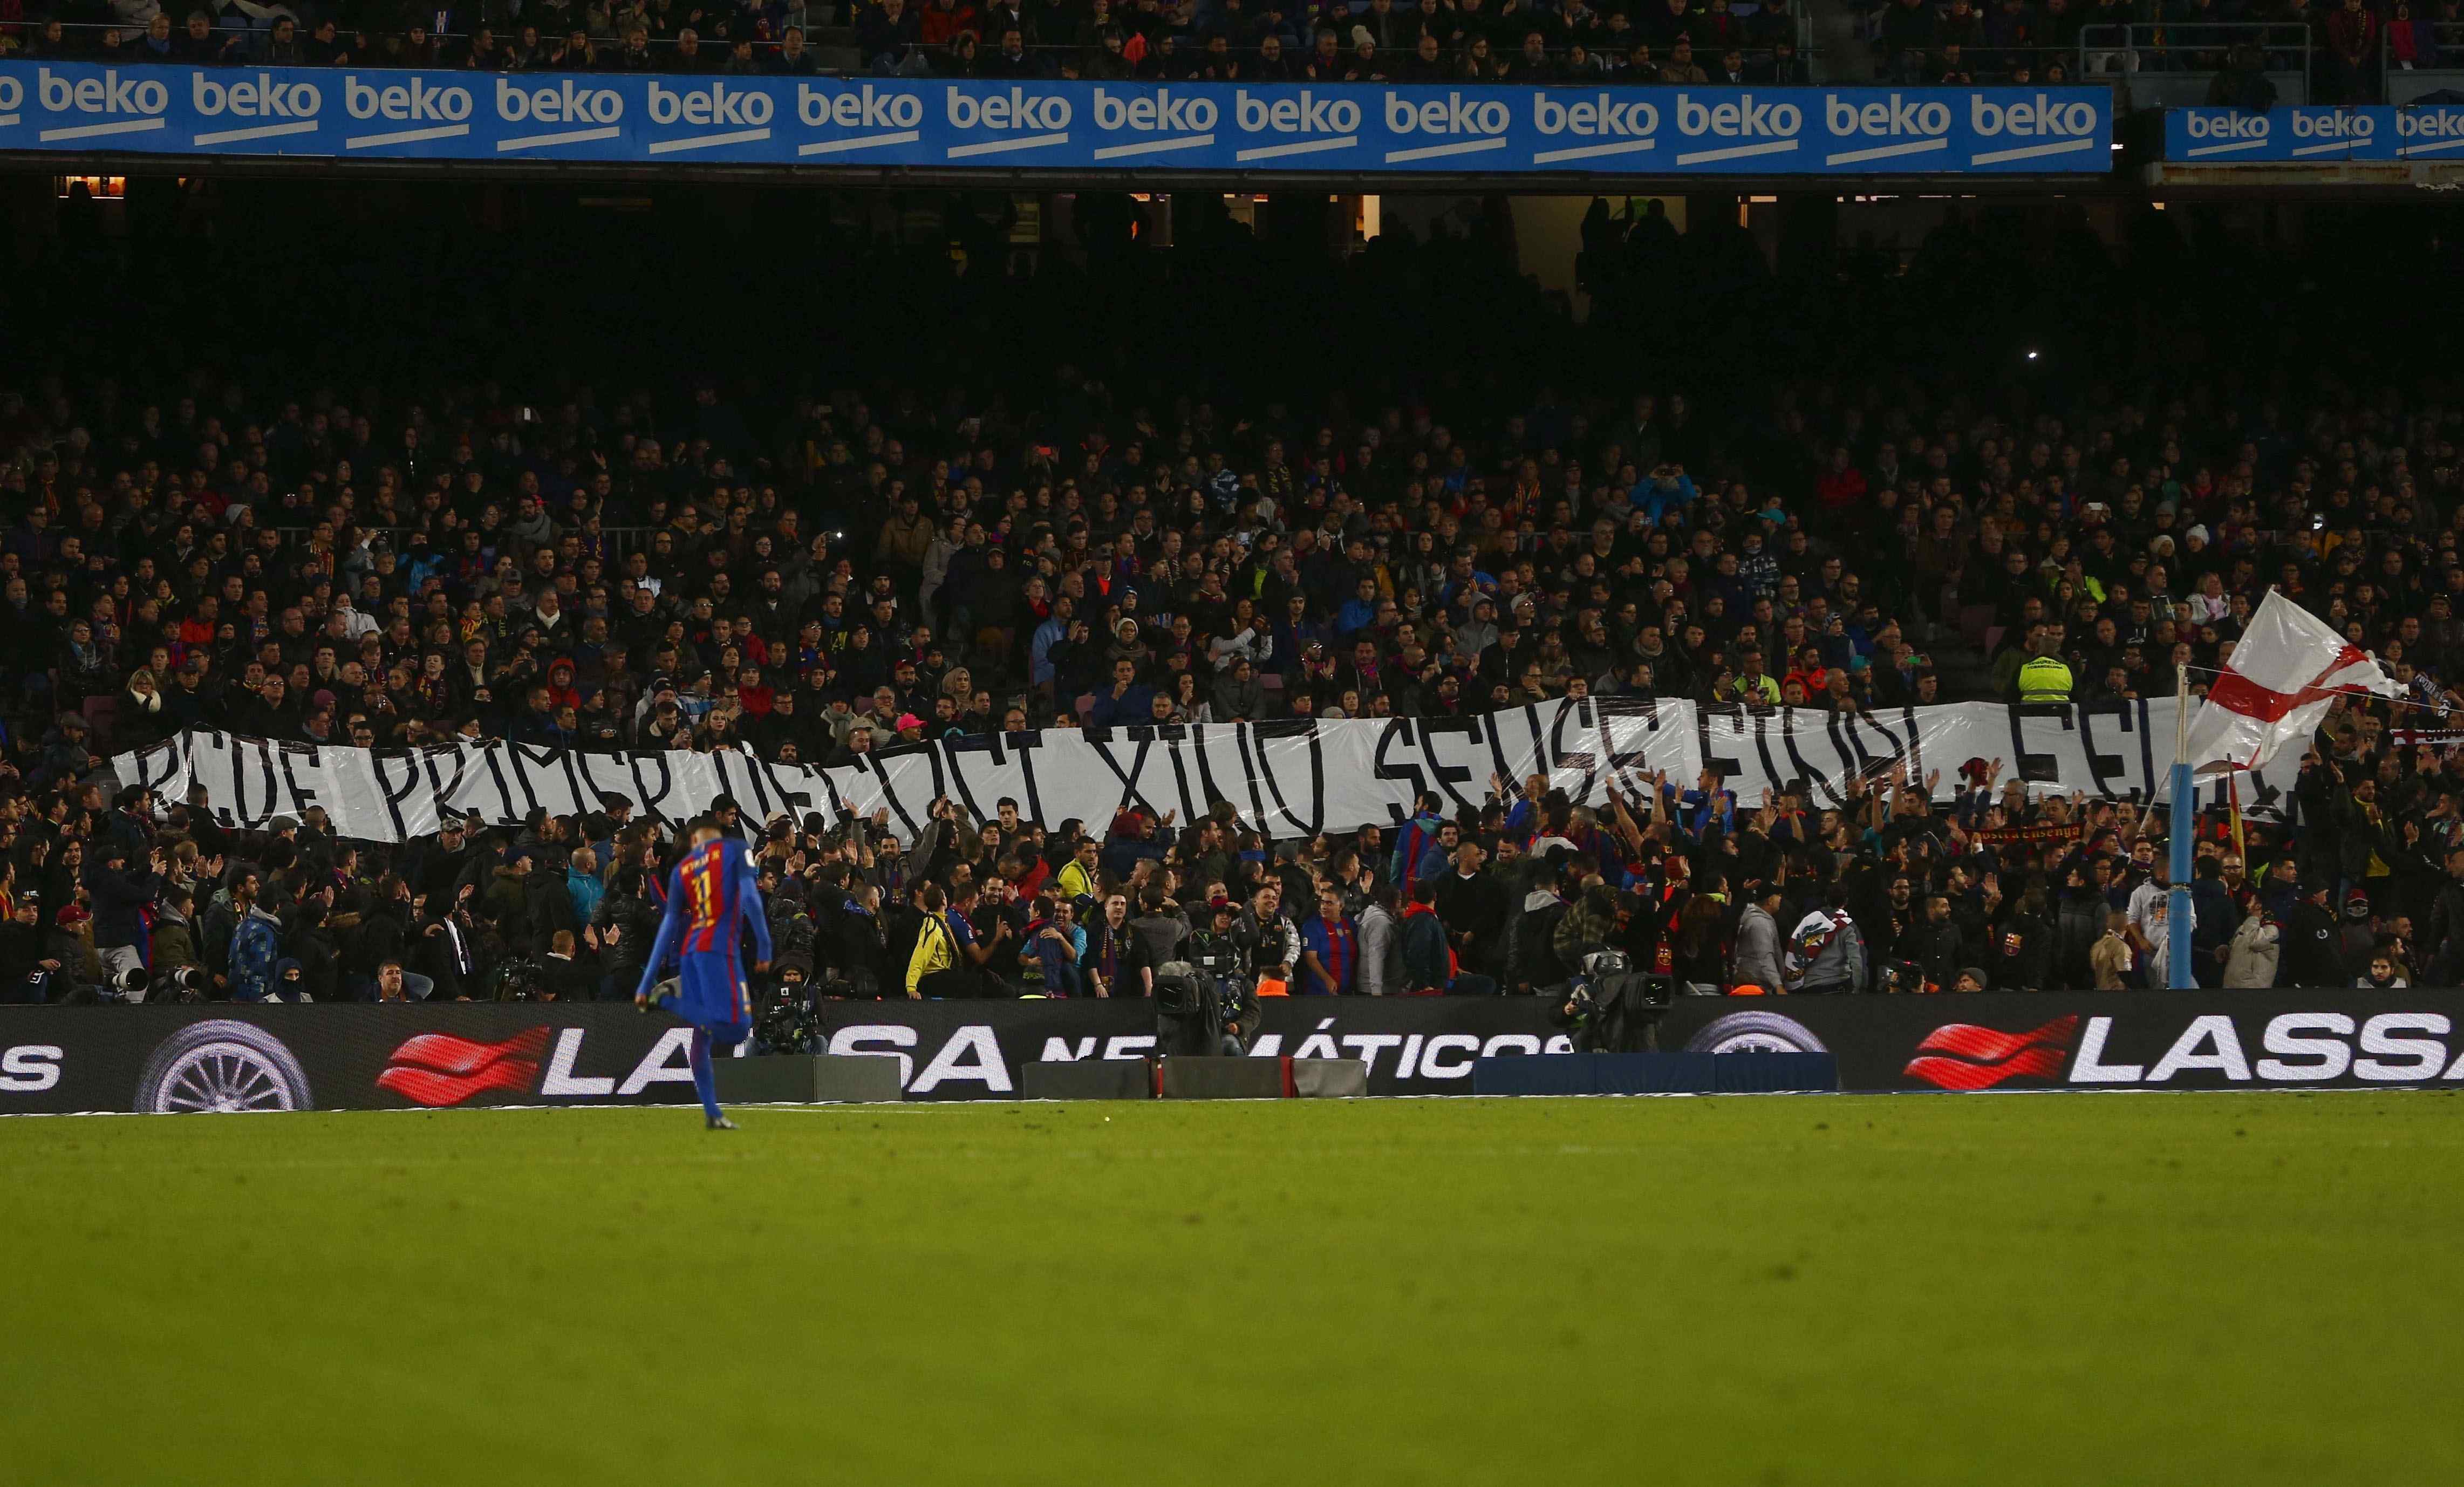 LaLliga denuncia els insults de l'afició del Barça a l'Espanyol